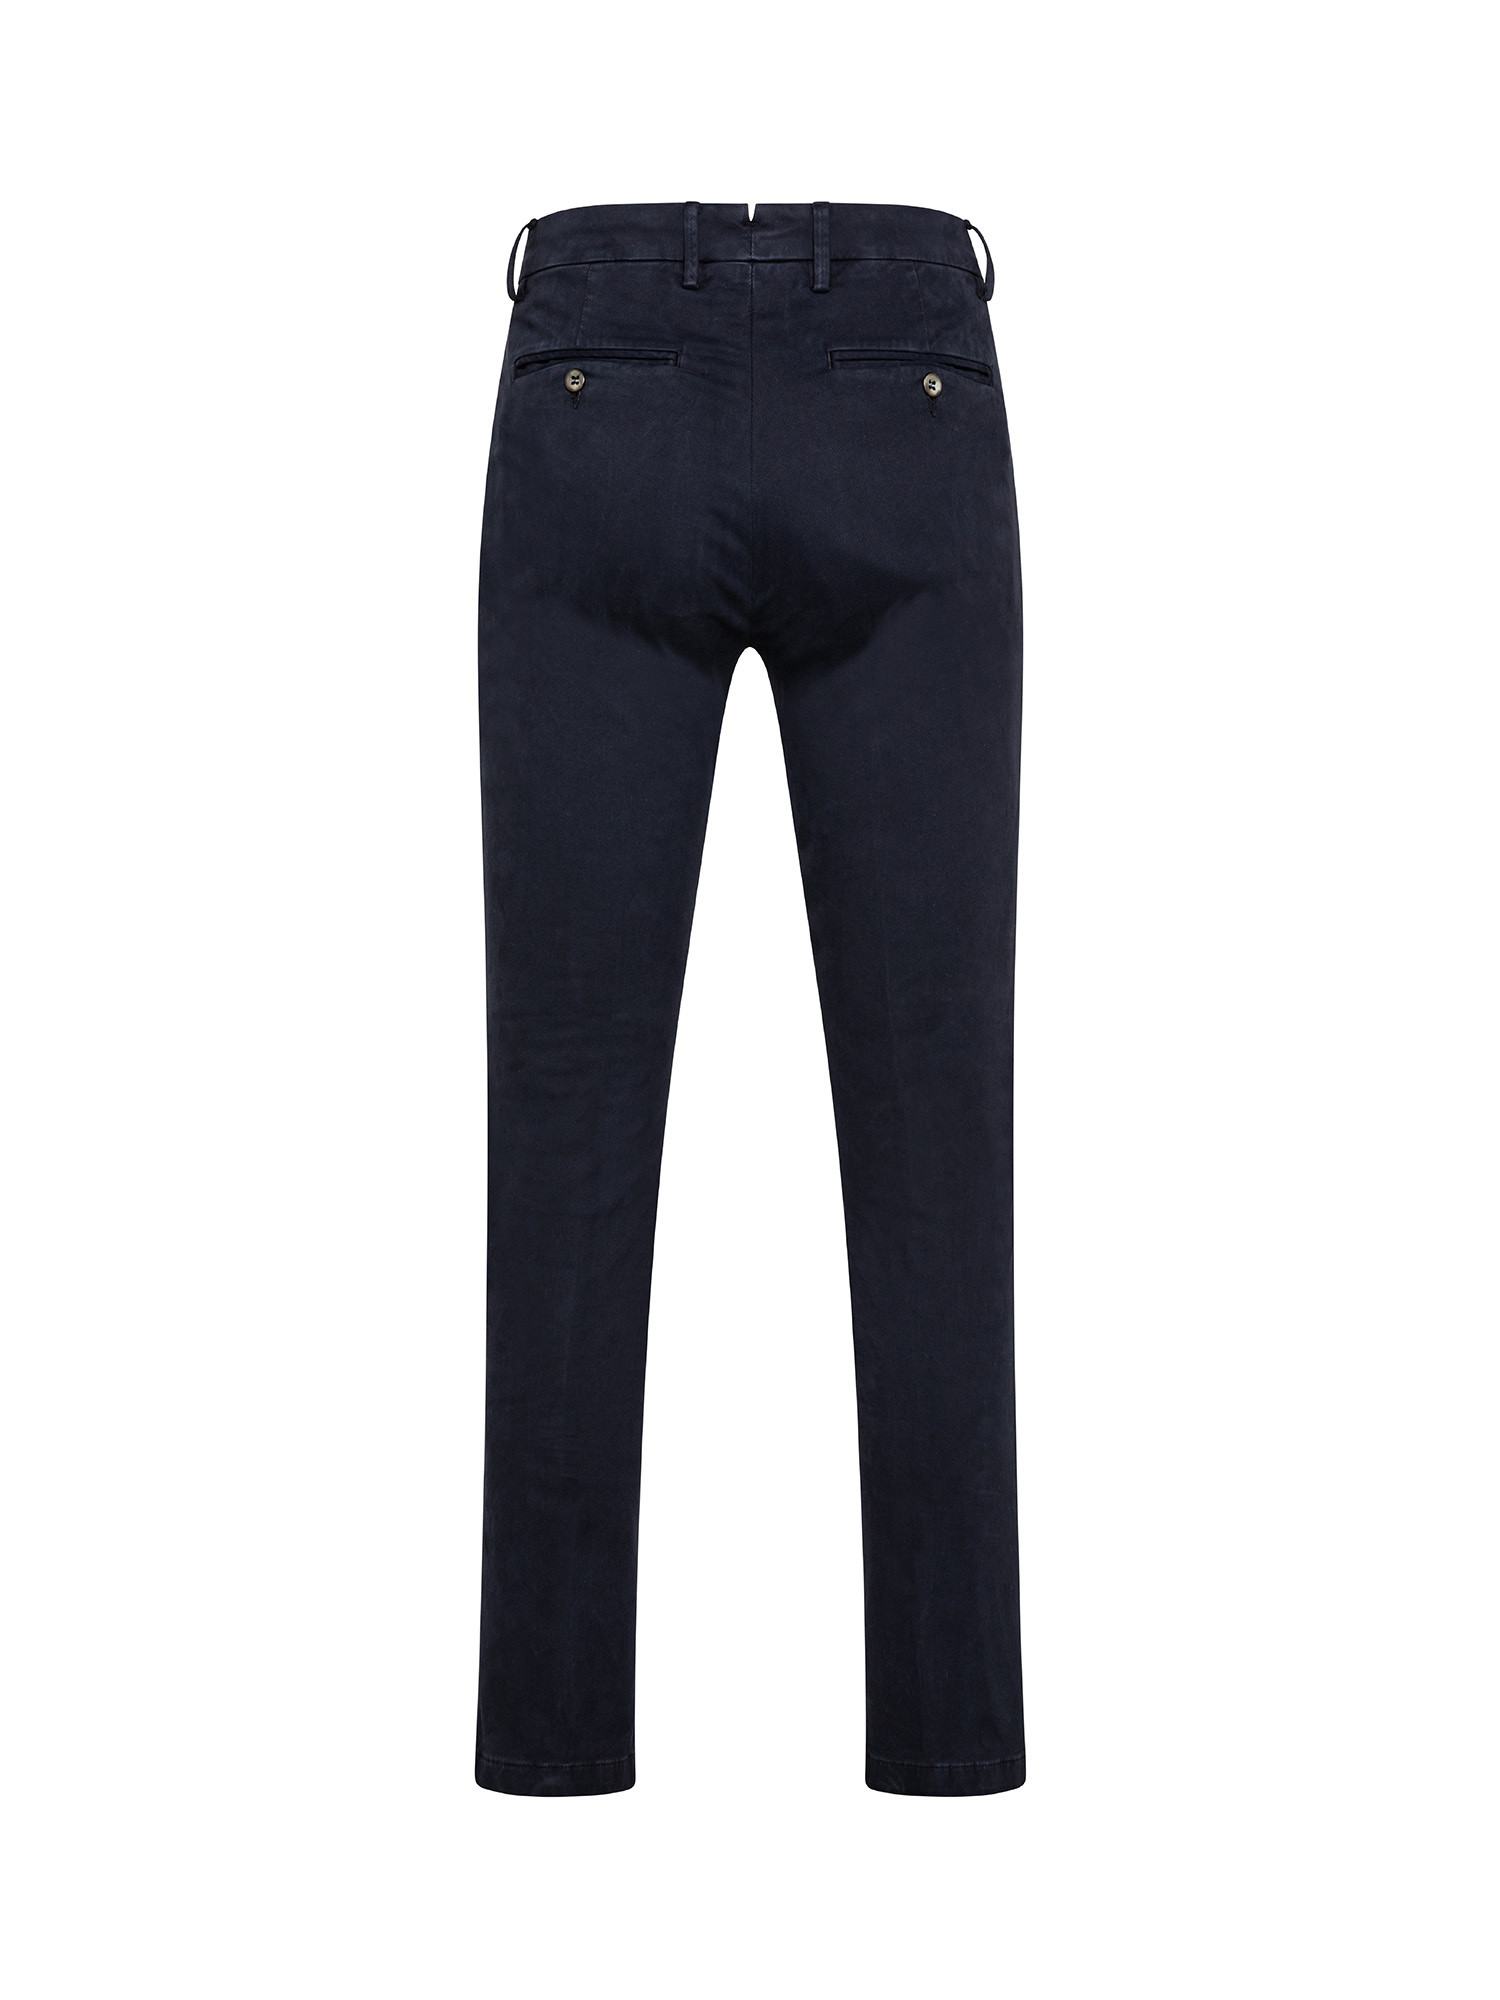 Pantaloni chino, Blu, large image number 1